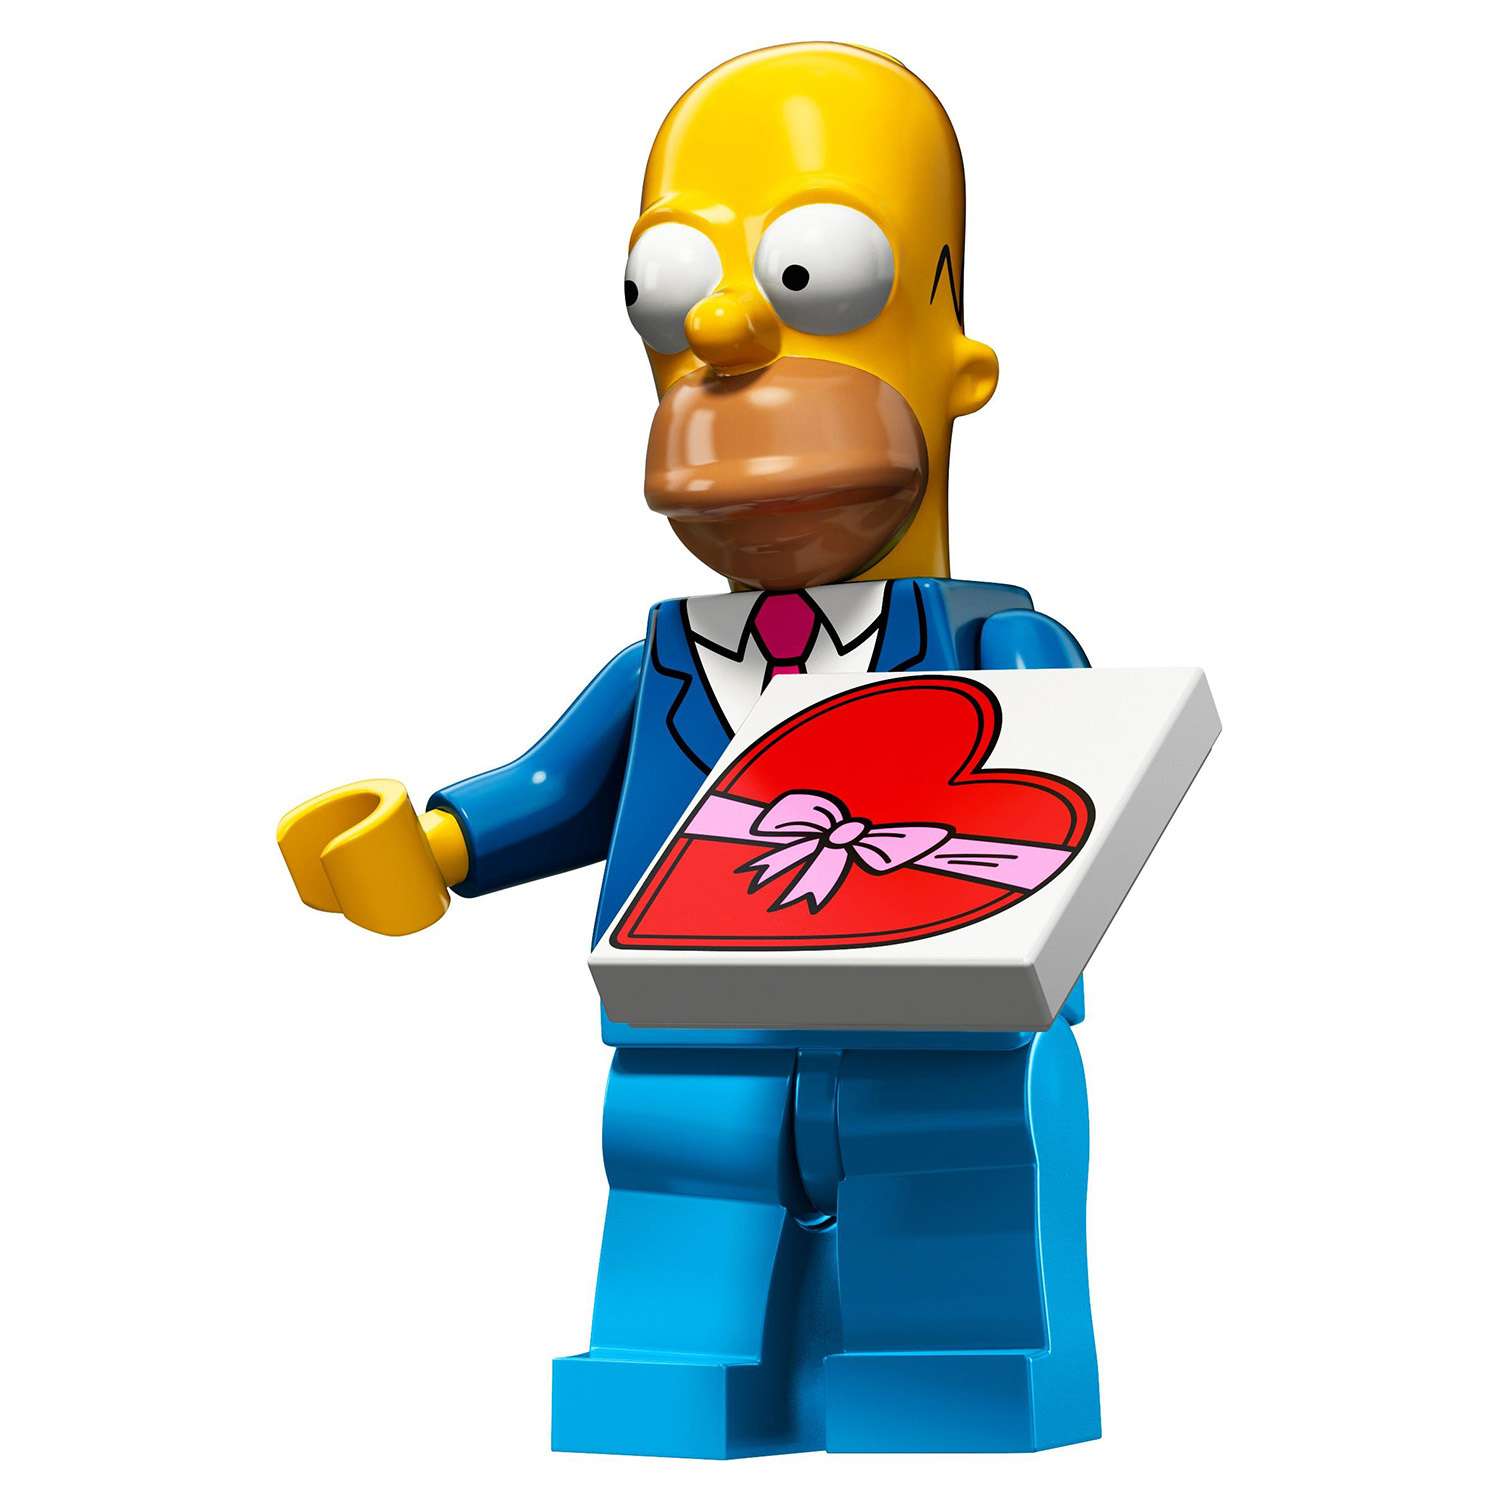 Конструктор LEGO Minifigures Минифигурки LEGO® Серия «Симпсоны» 2.0 (71009) - фото 7